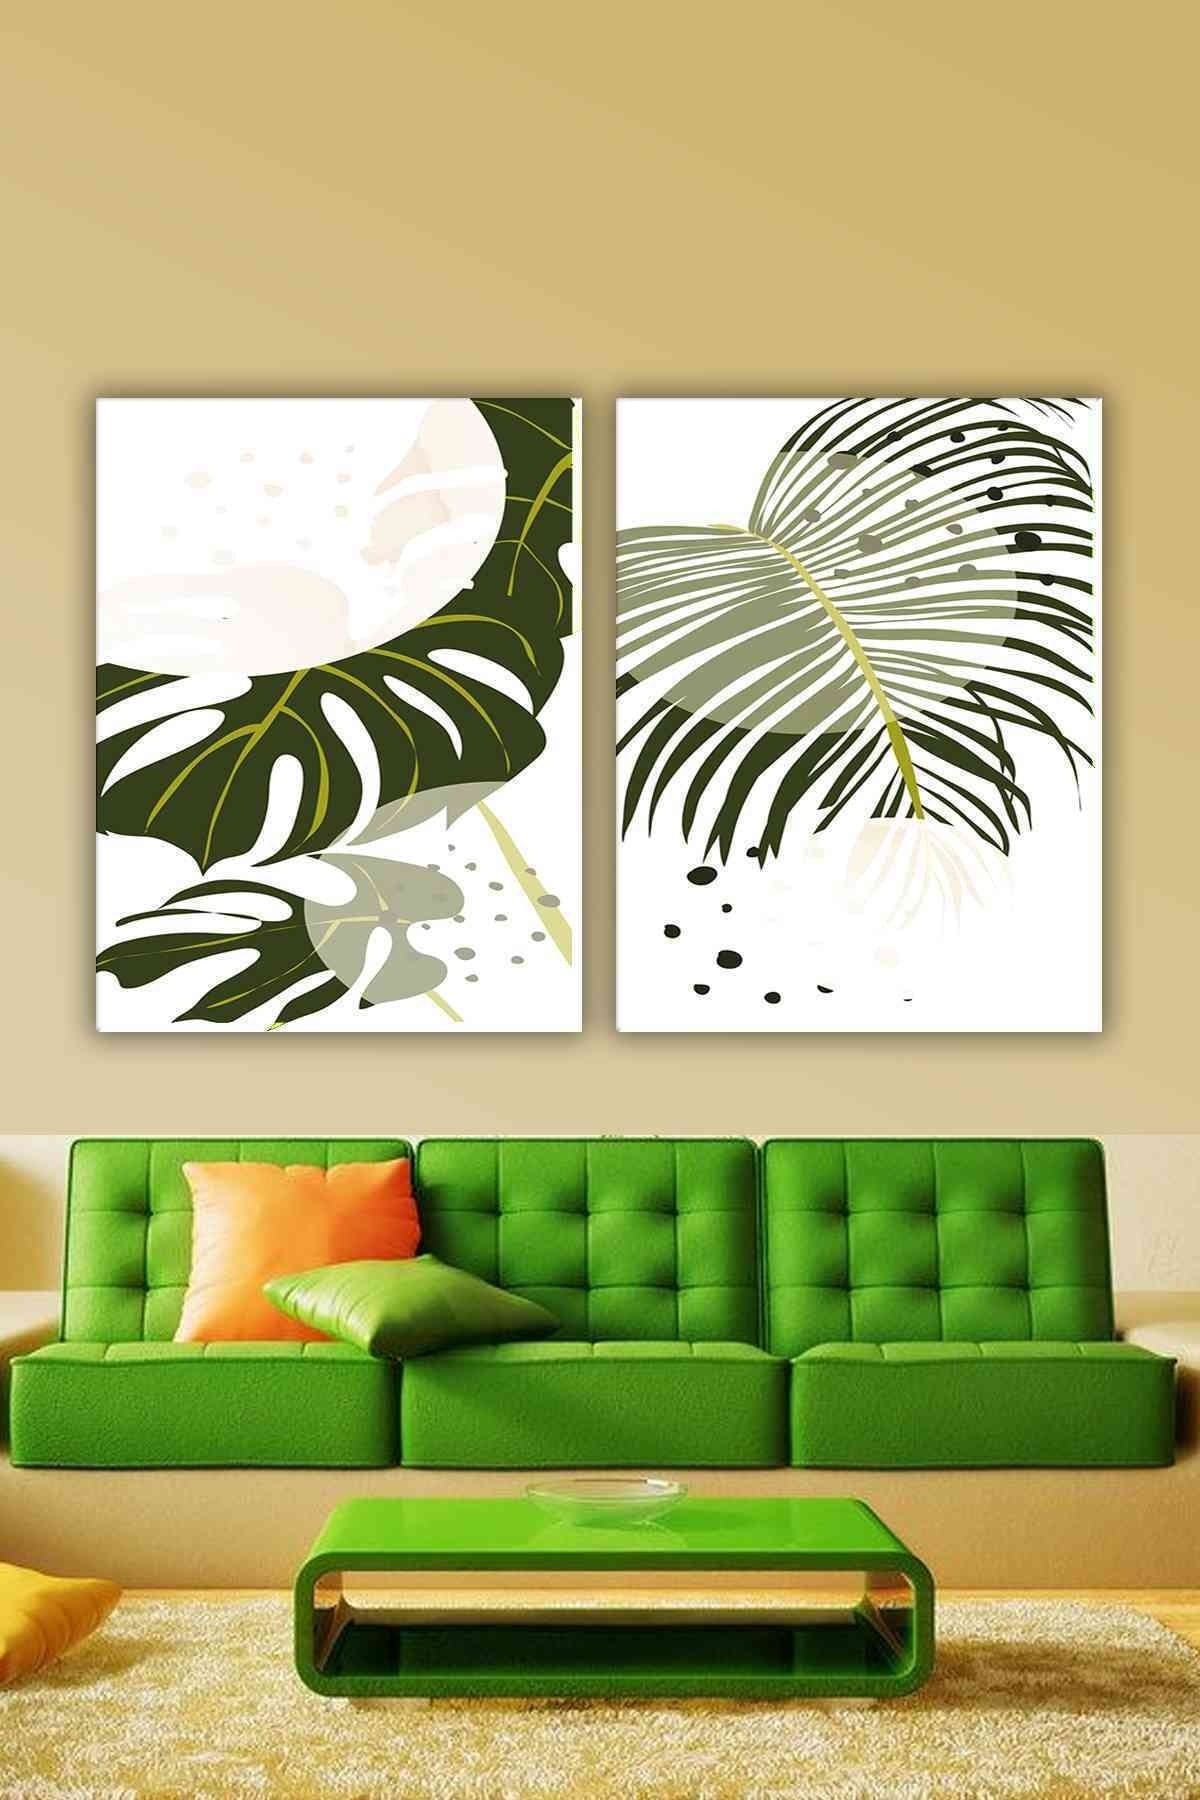 CLZ104 Parçalı Dekoratif Yeşil Yapraklı Soyut Tablo ( Salon)   (140 x 100) cm